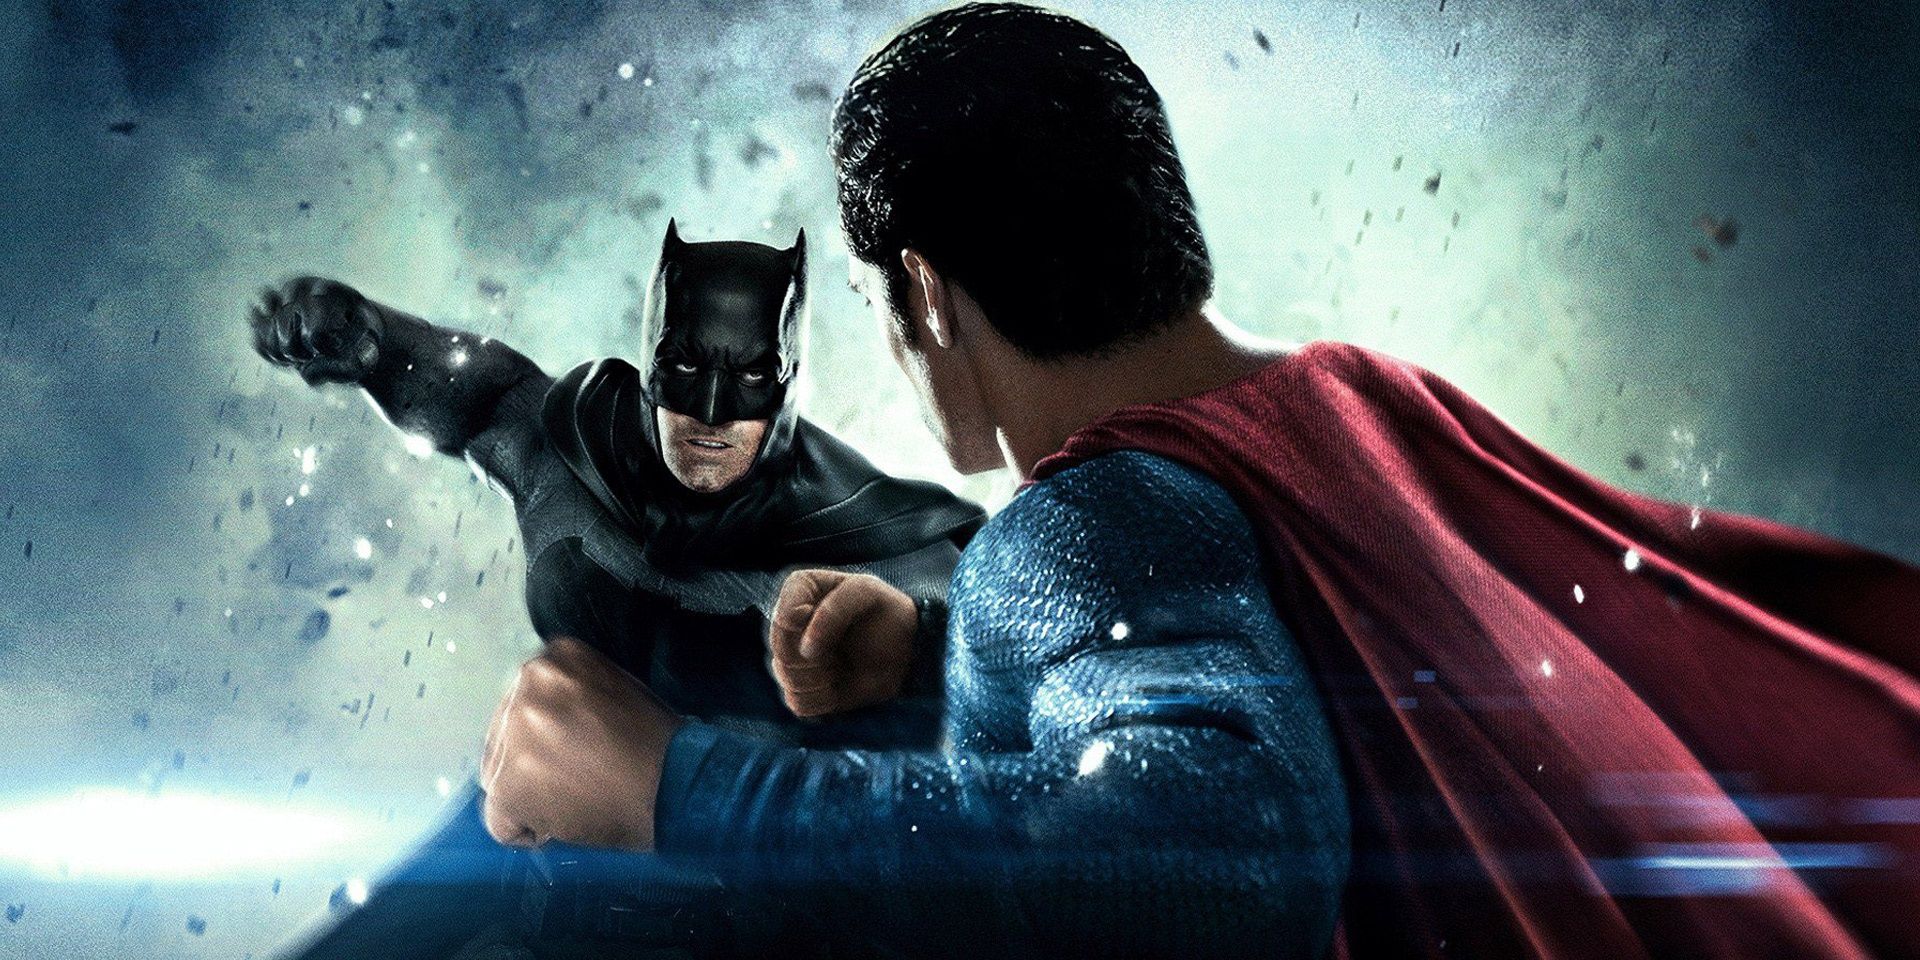 Ben Affleck's Batman and Henry Cavill's Superman in Batman V. Superman: Dawn of Justice